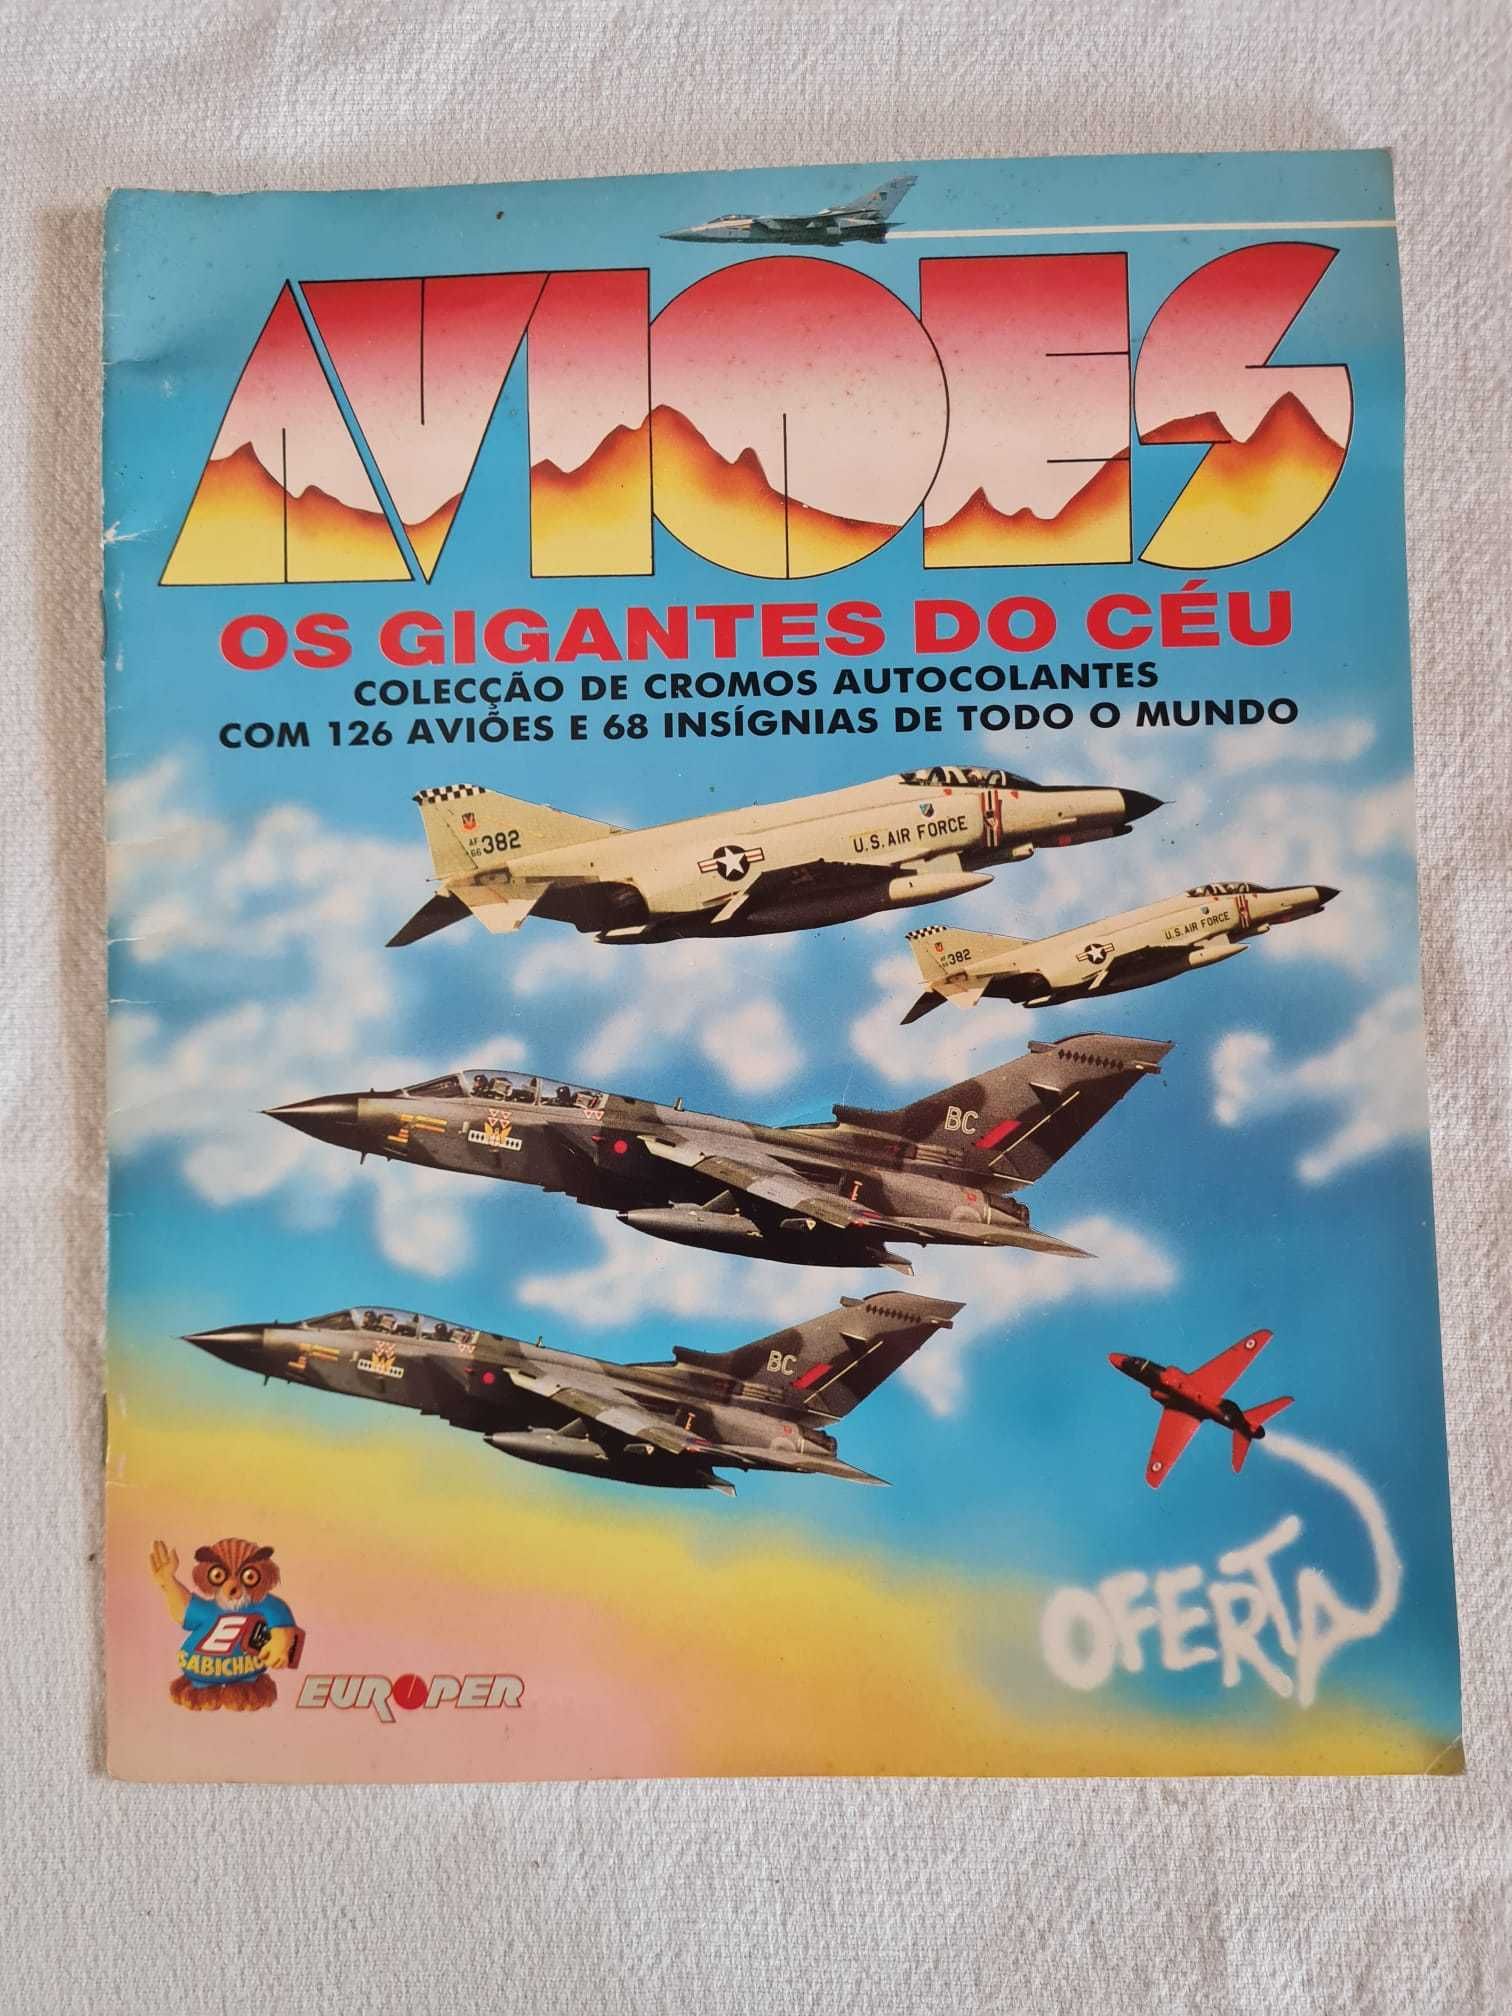 Caderneta Avioes - Os gigantes do céu 1989